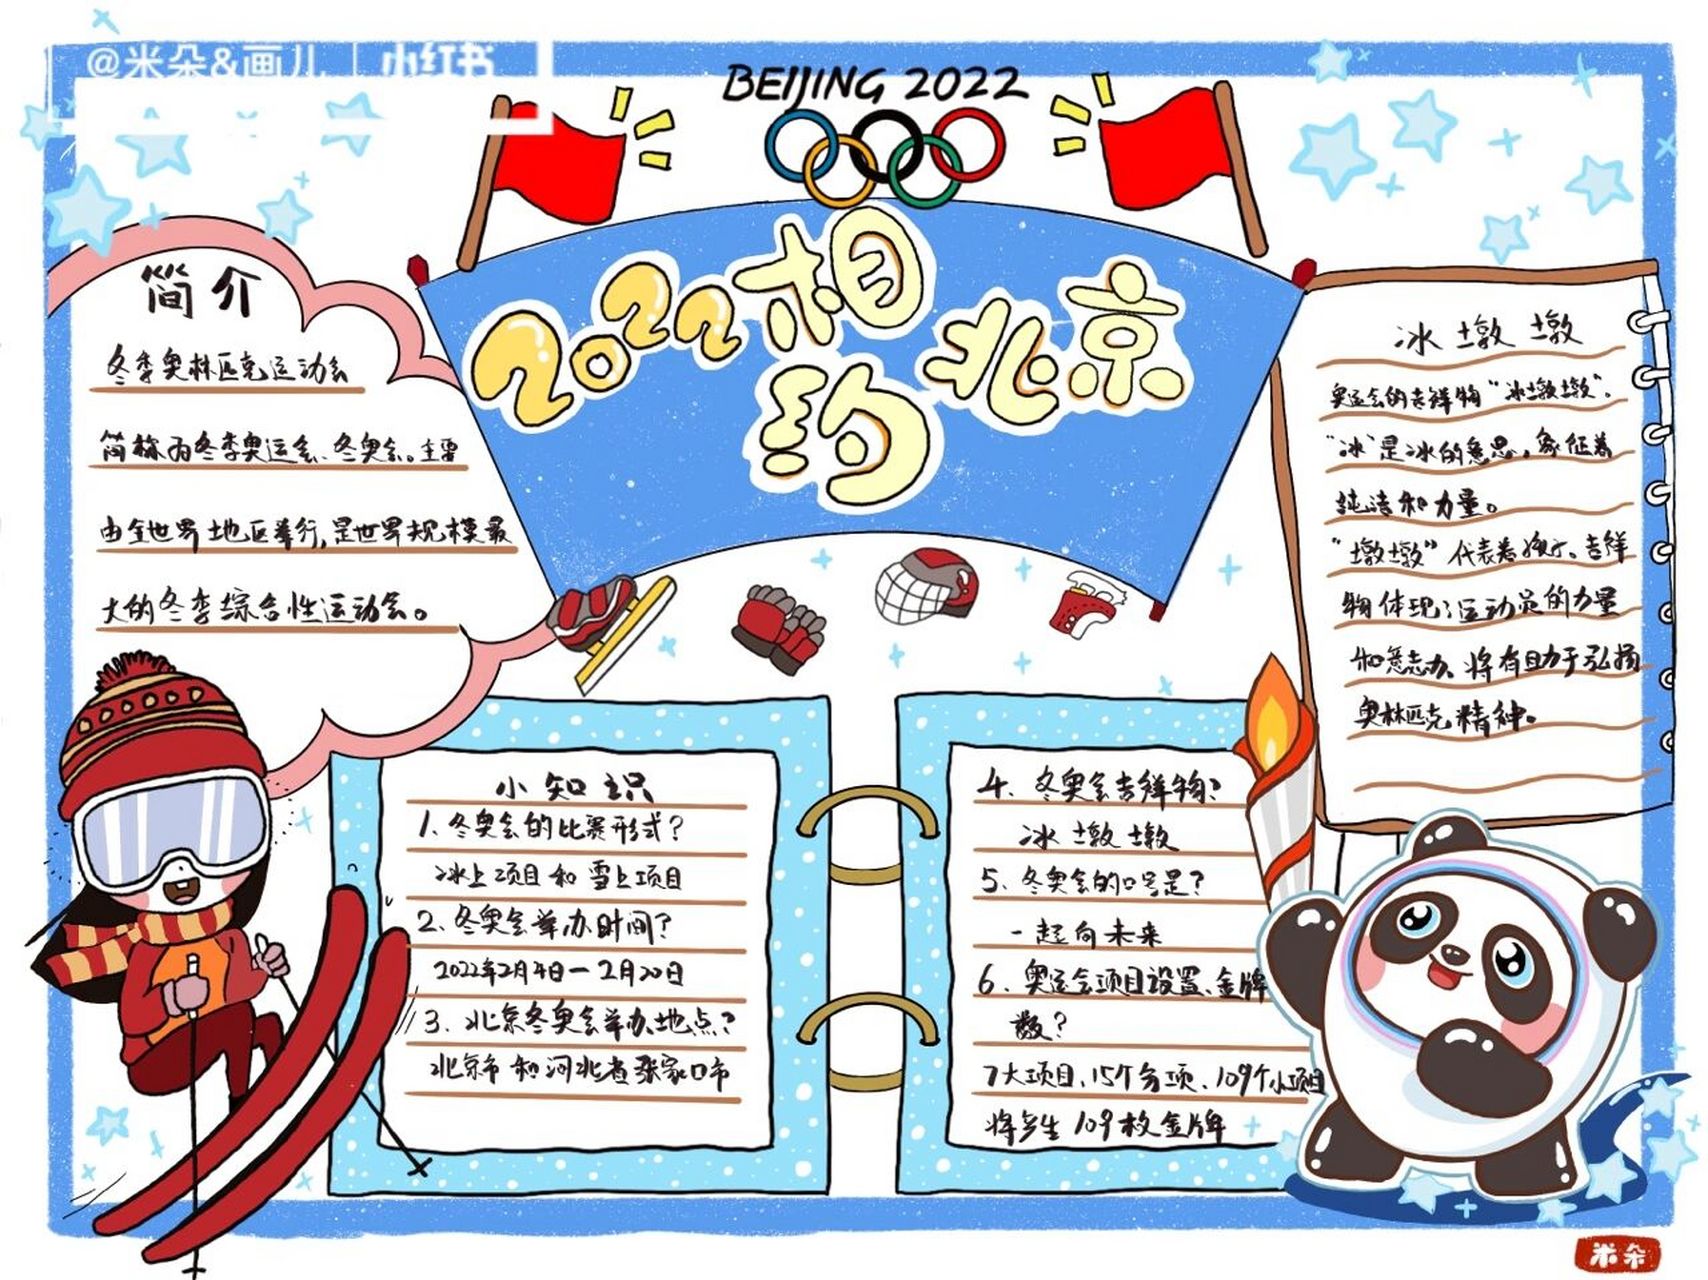 学生手抄报,有线稿,有教程 一起助力2022北京冬奥运会, 画一个冬奥会